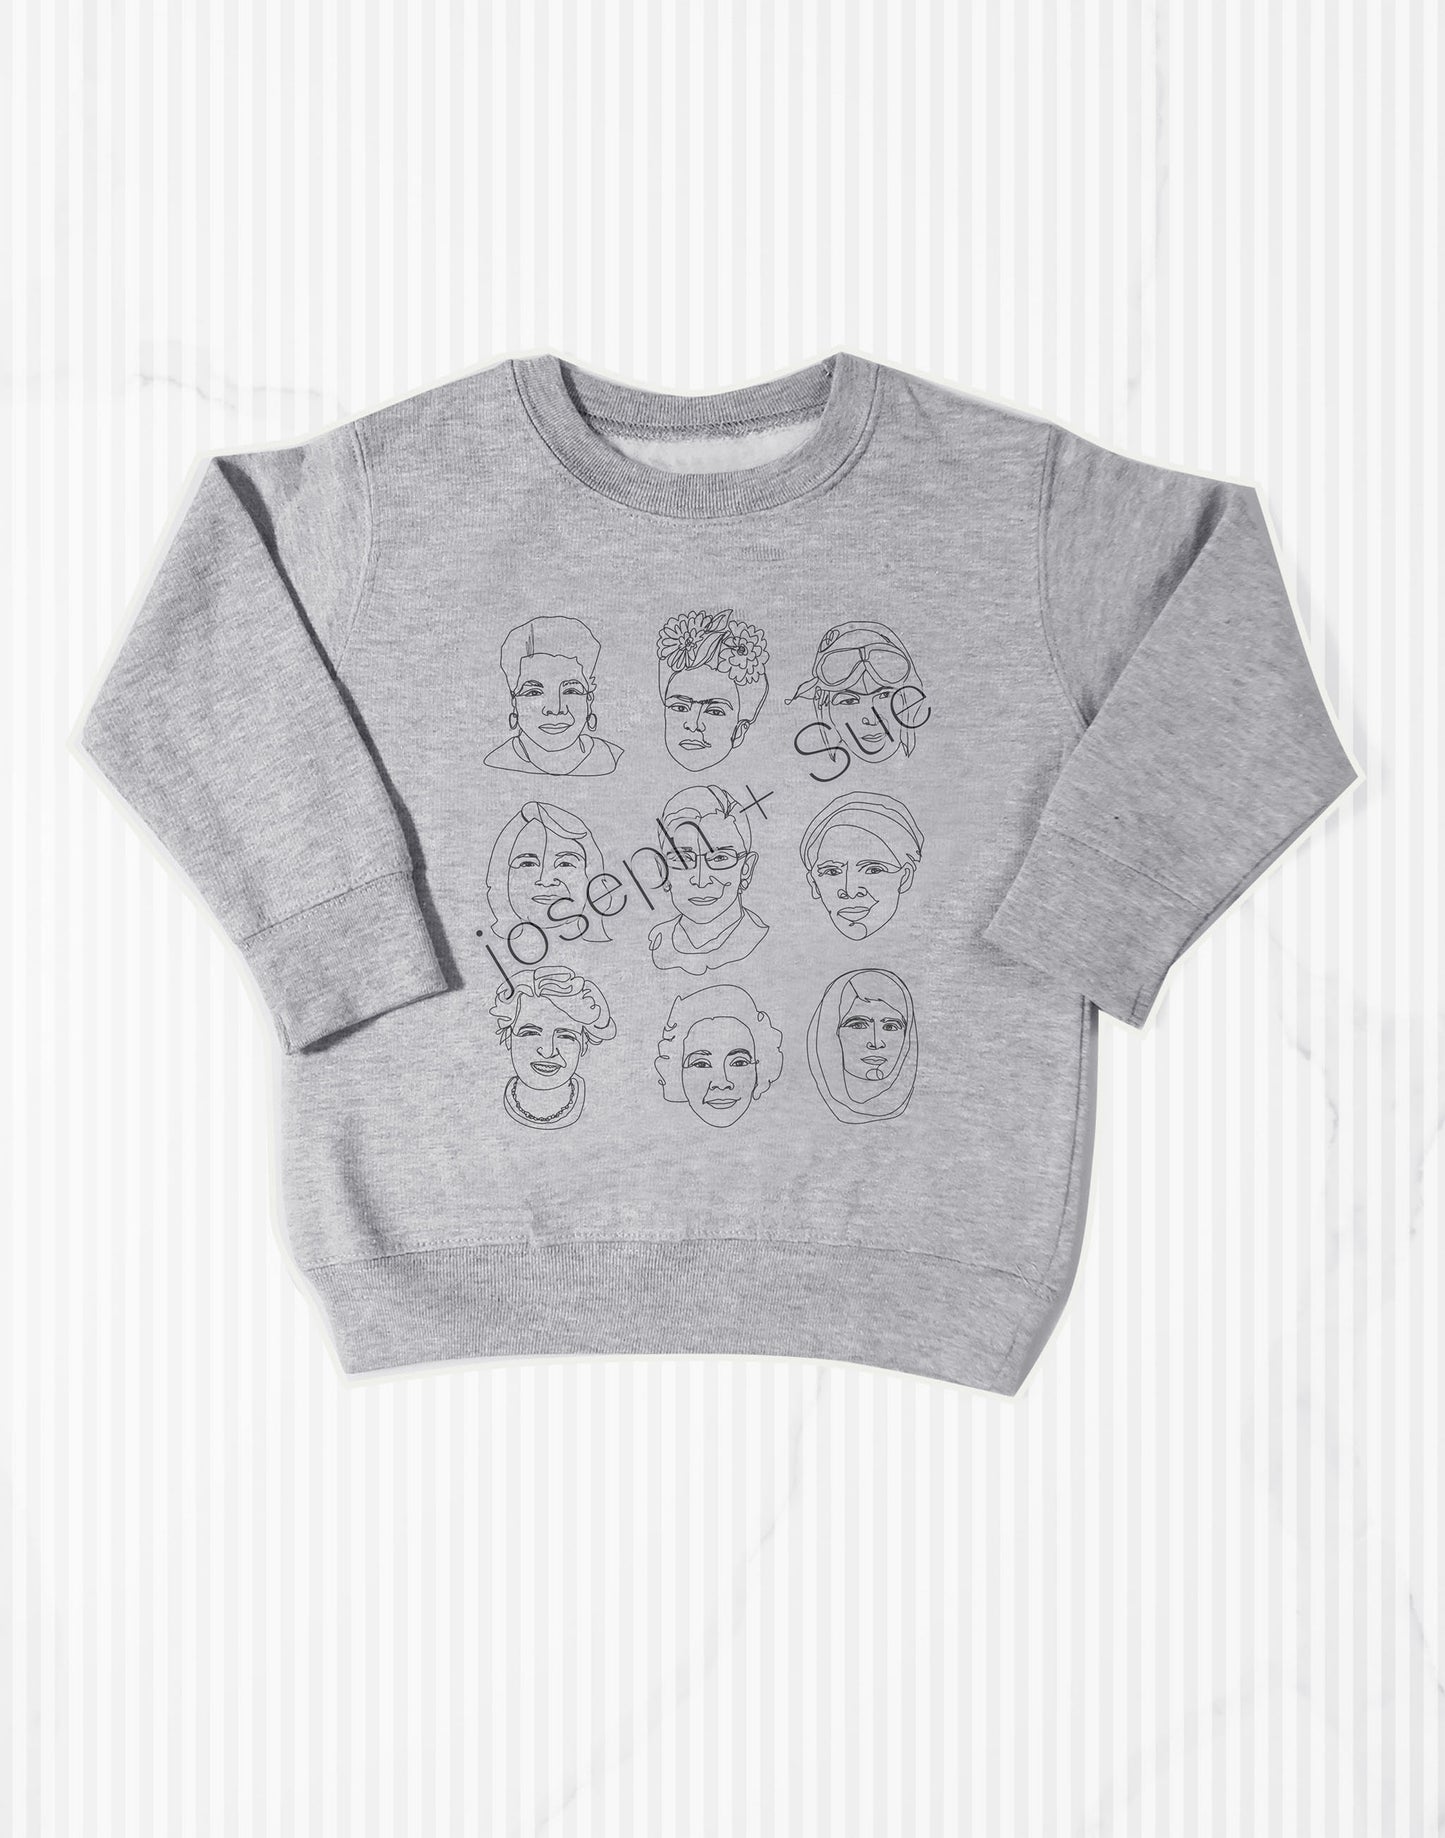 The Original 3x3 Badasses Kids Sweatshirt